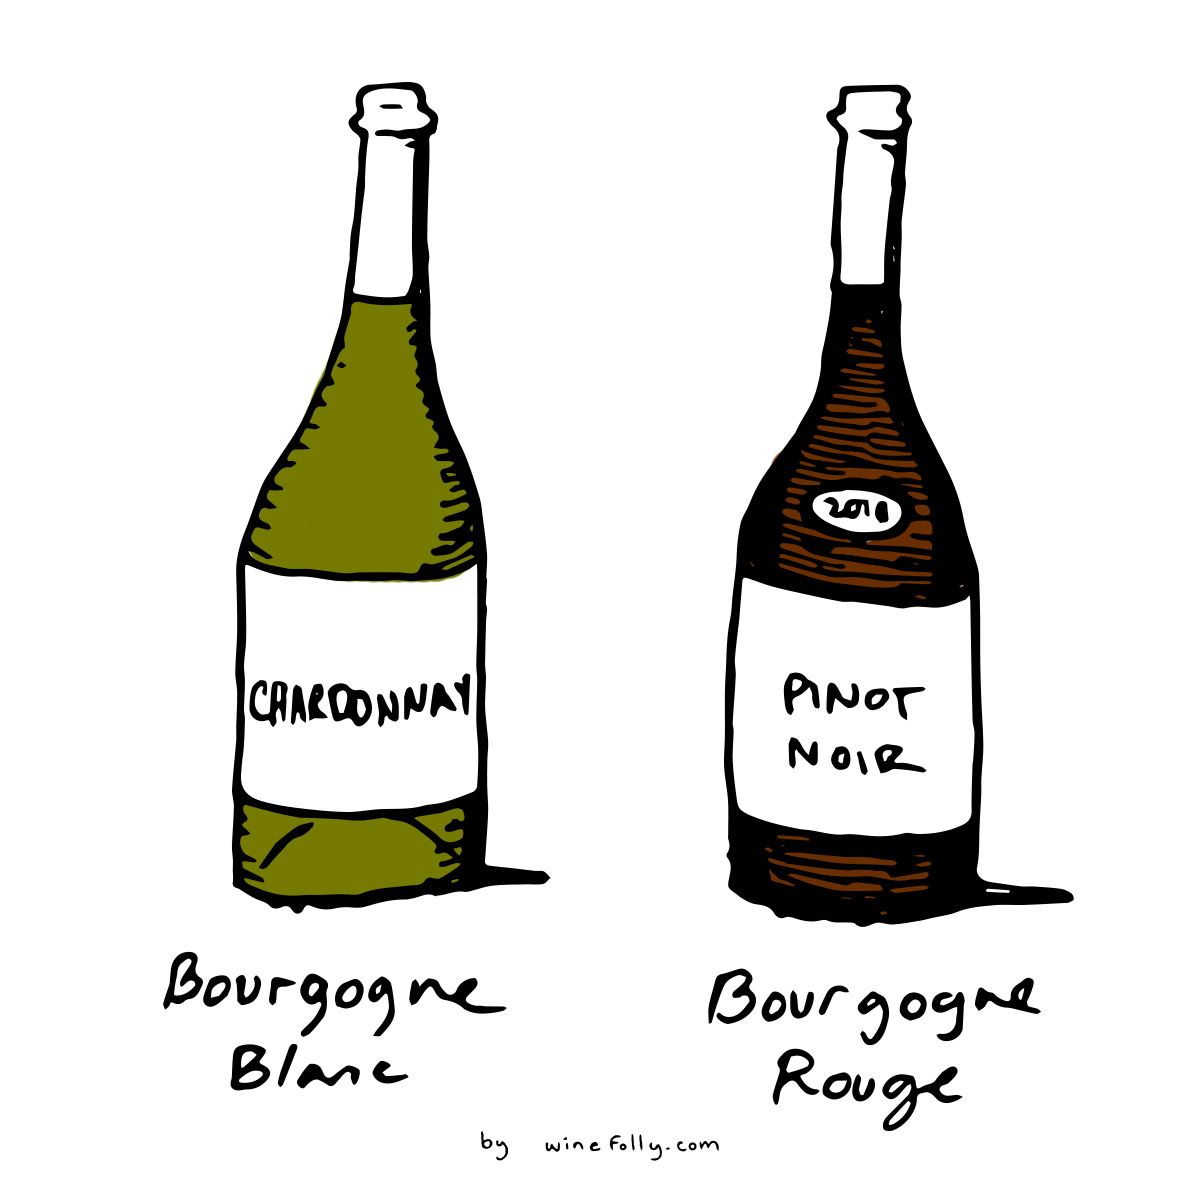 Chardonnay y Pinot Noir son las dos uvas principales de los vinos Blanc y Rouge de Bourgogne (Borgoña) - ilustración de Wine Folly